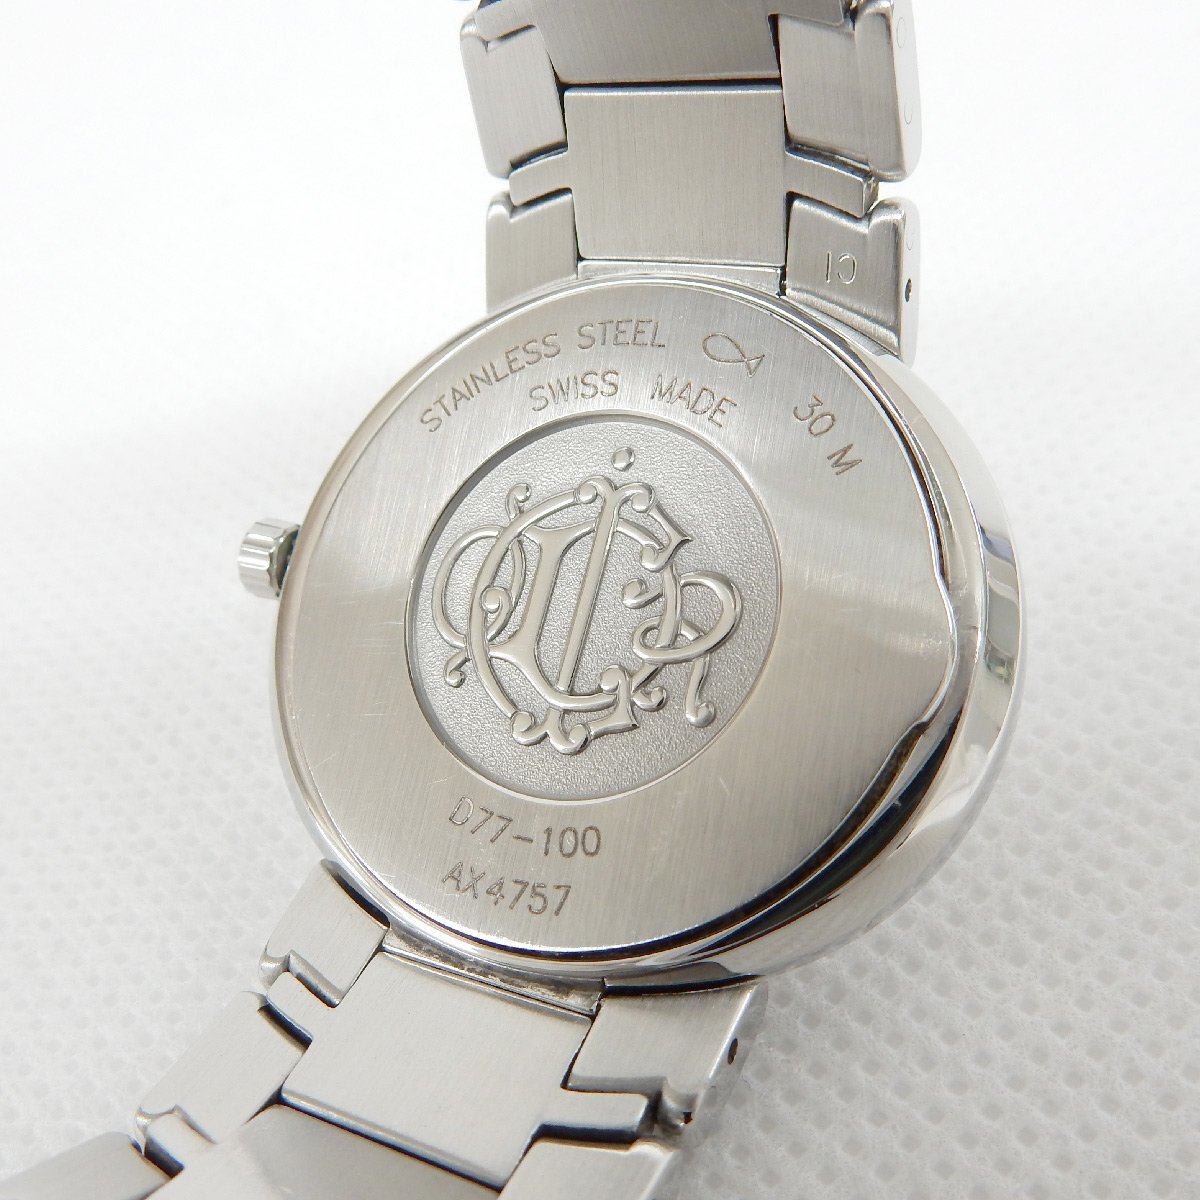 SA63■ [送料無料/中古美品] ディオール Christian Dior クォーツ腕時計 D77-100 ホワイト×シルバーの画像5